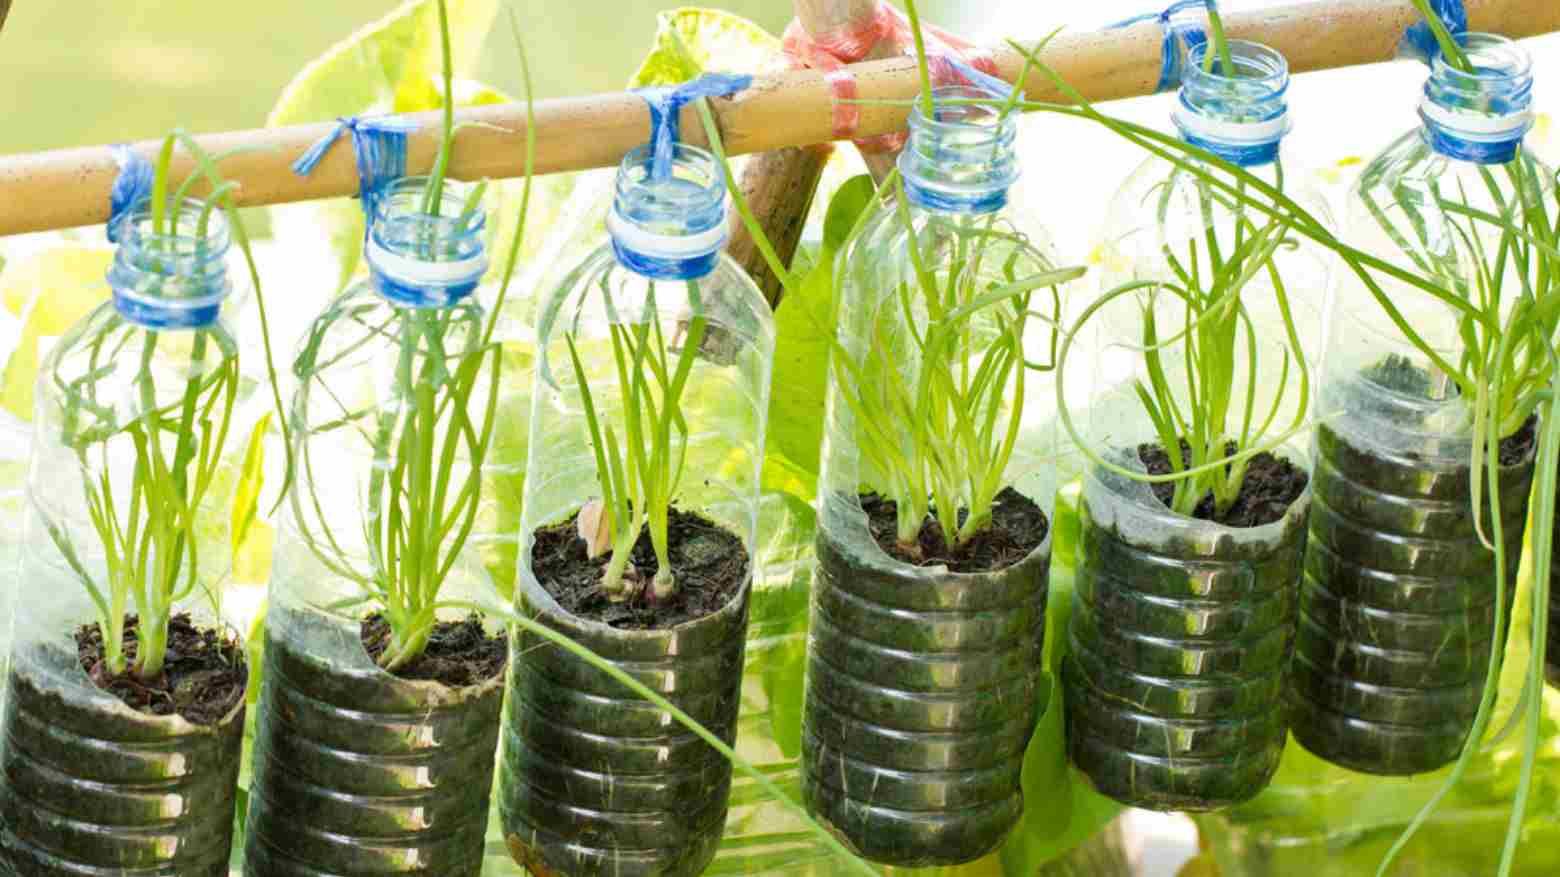 Yuk, Manfaatkan Sampah Botol Plastik Jadi Tempat Menanam Sayur dan Bunga